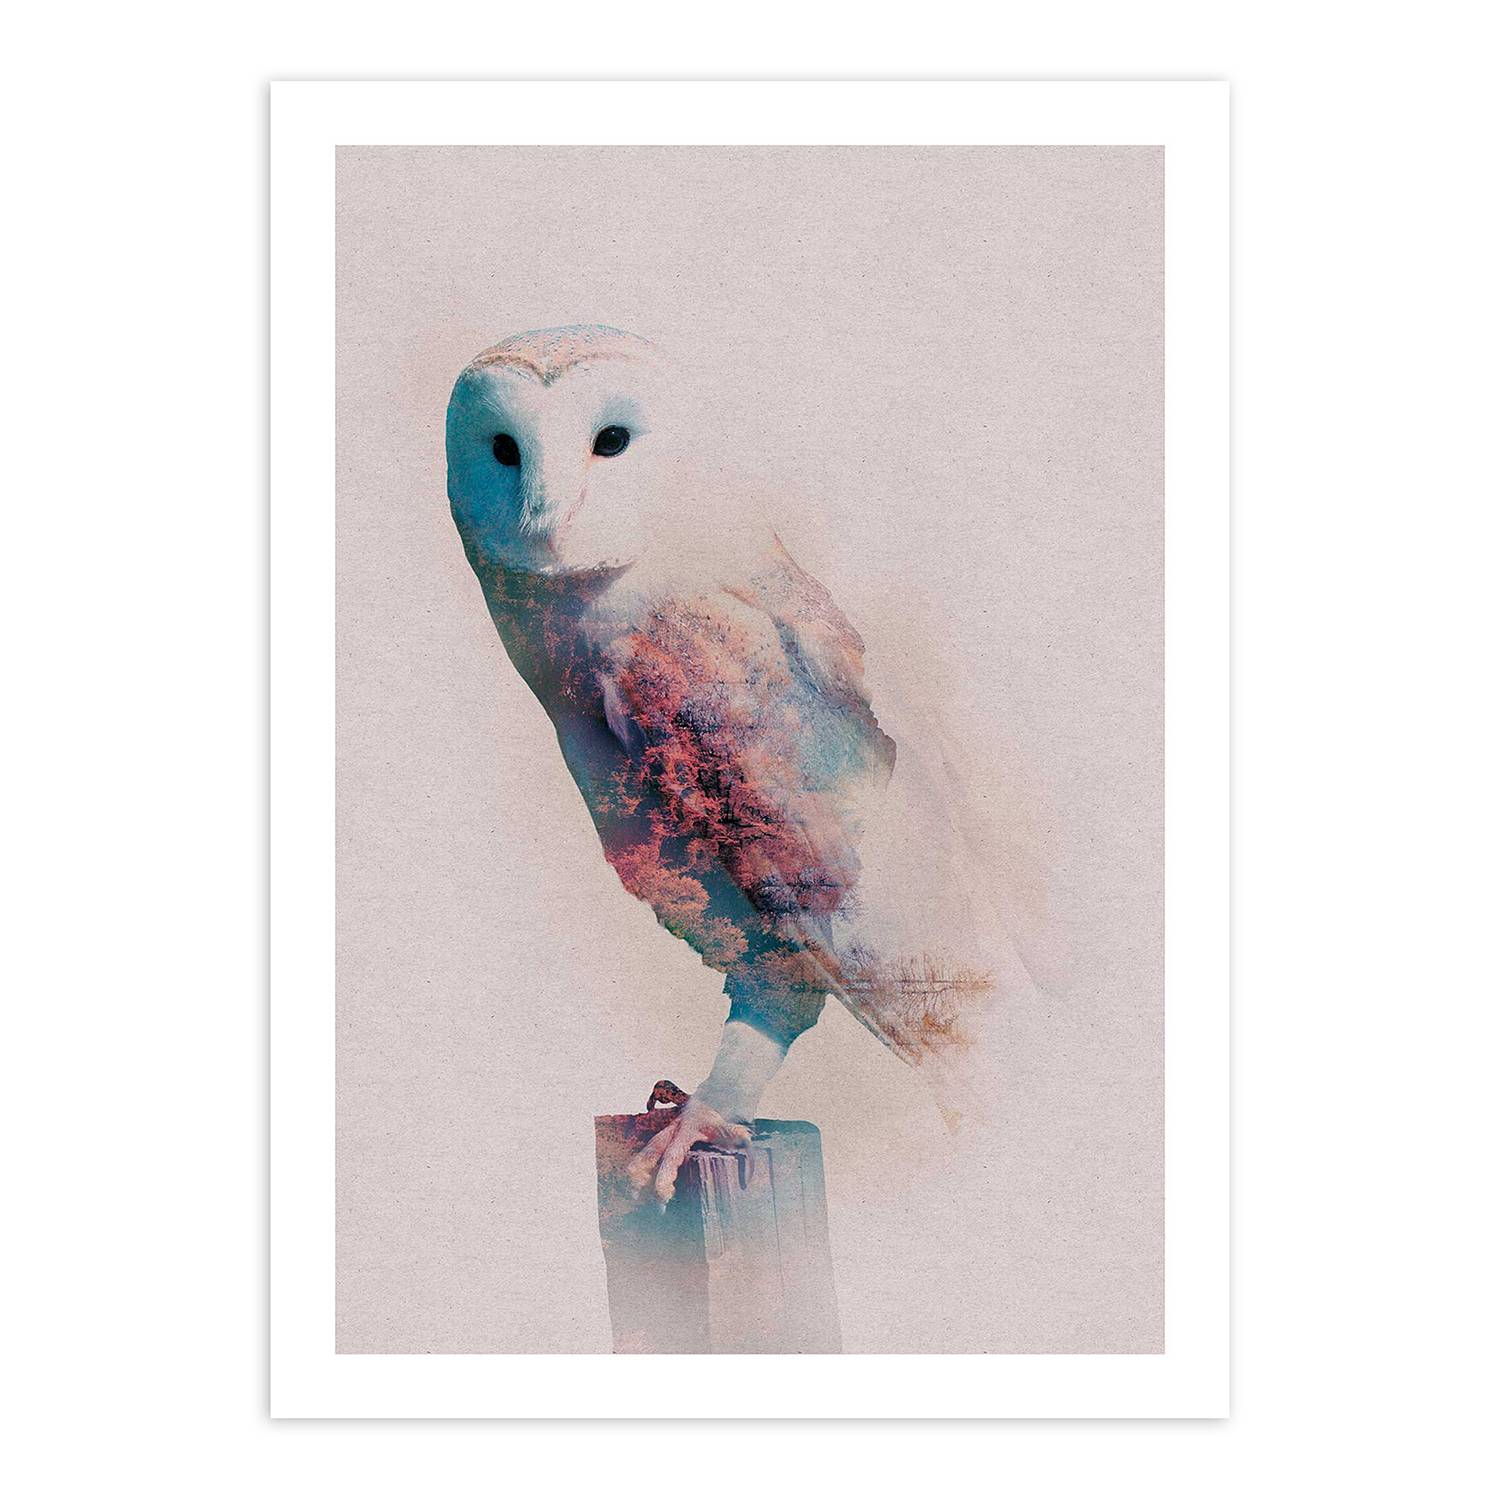 Wandbild Animals Forest Owl kaufen | home24